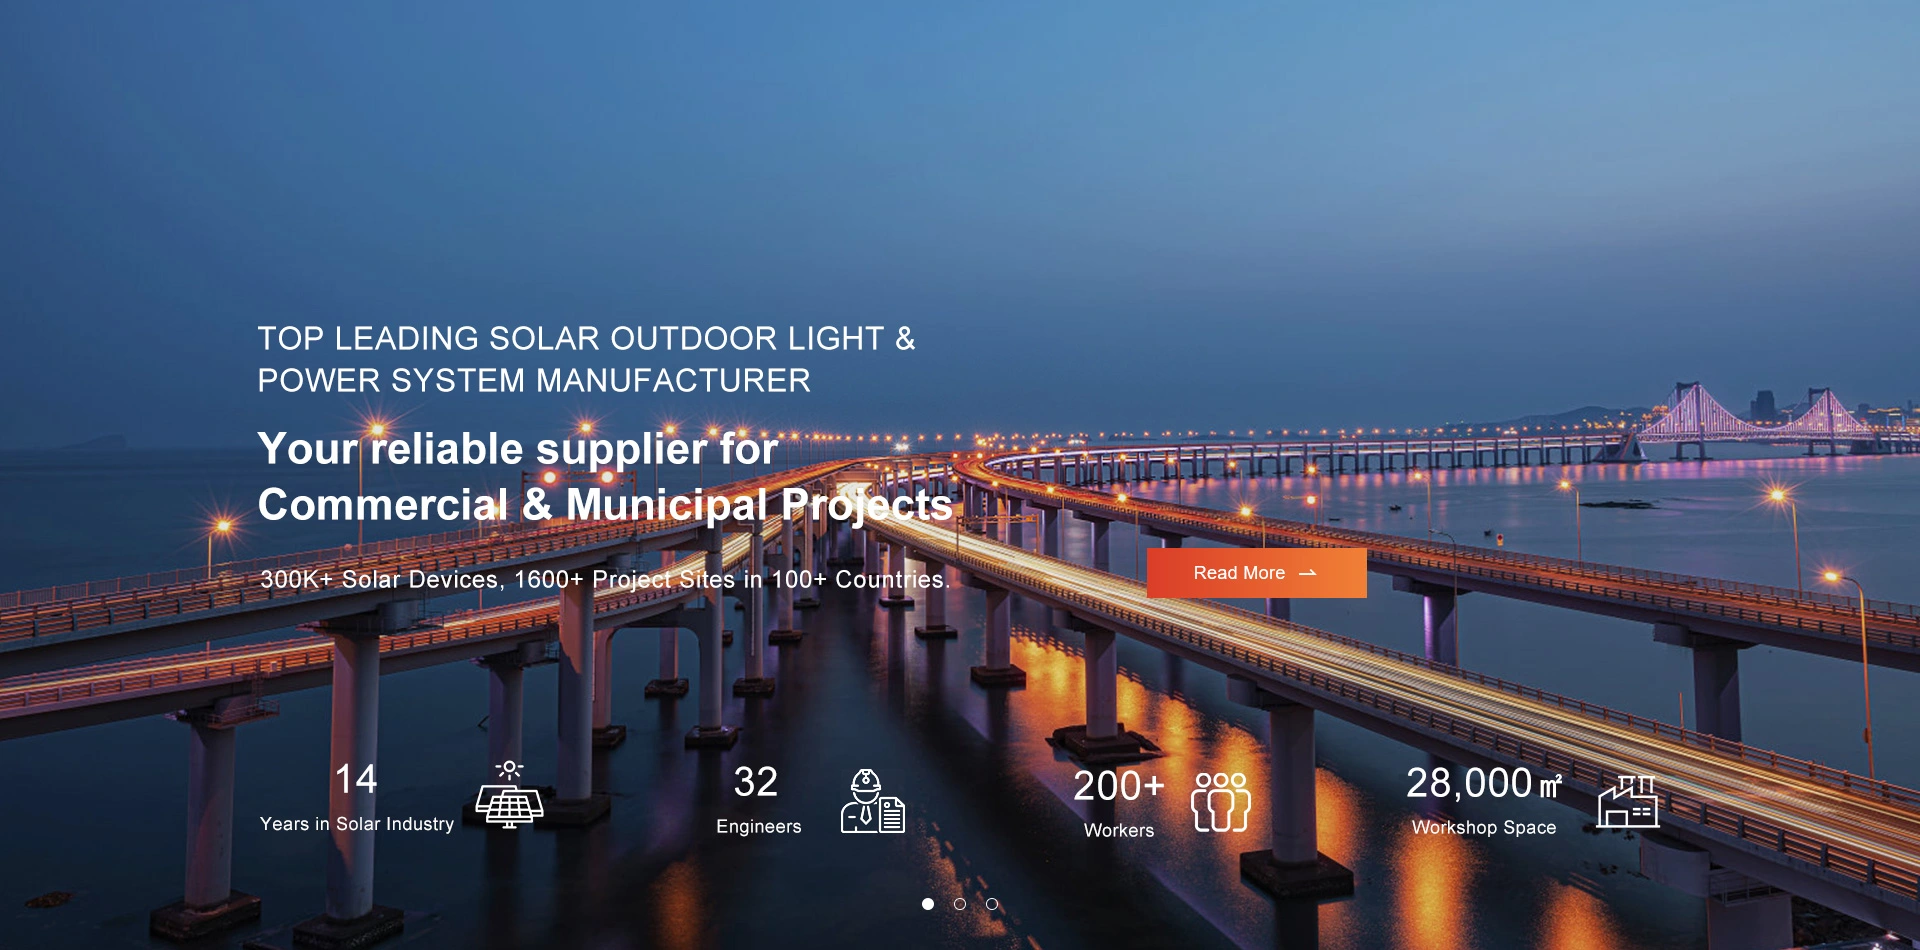 Iluminando su mundo con energía limpia: iluminación solar al aire libre por INLUX SOLAR